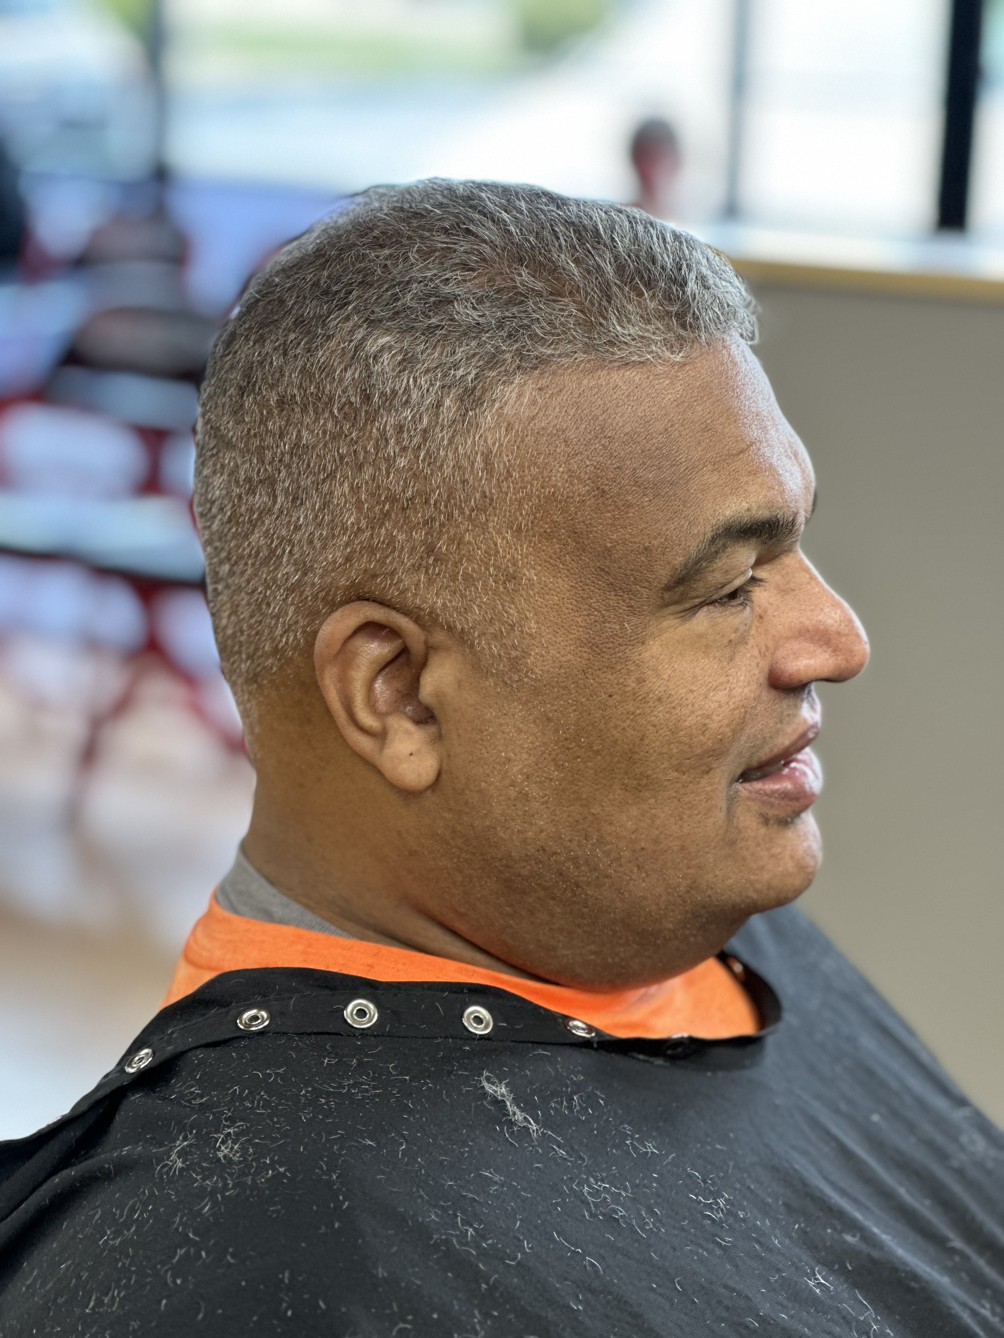 Sport Clips Haircuts of Glassboro - Doubletree Plaza | 694 Delsea Dr, Glassboro, NJ 08028 | Phone: (856) 956-3818